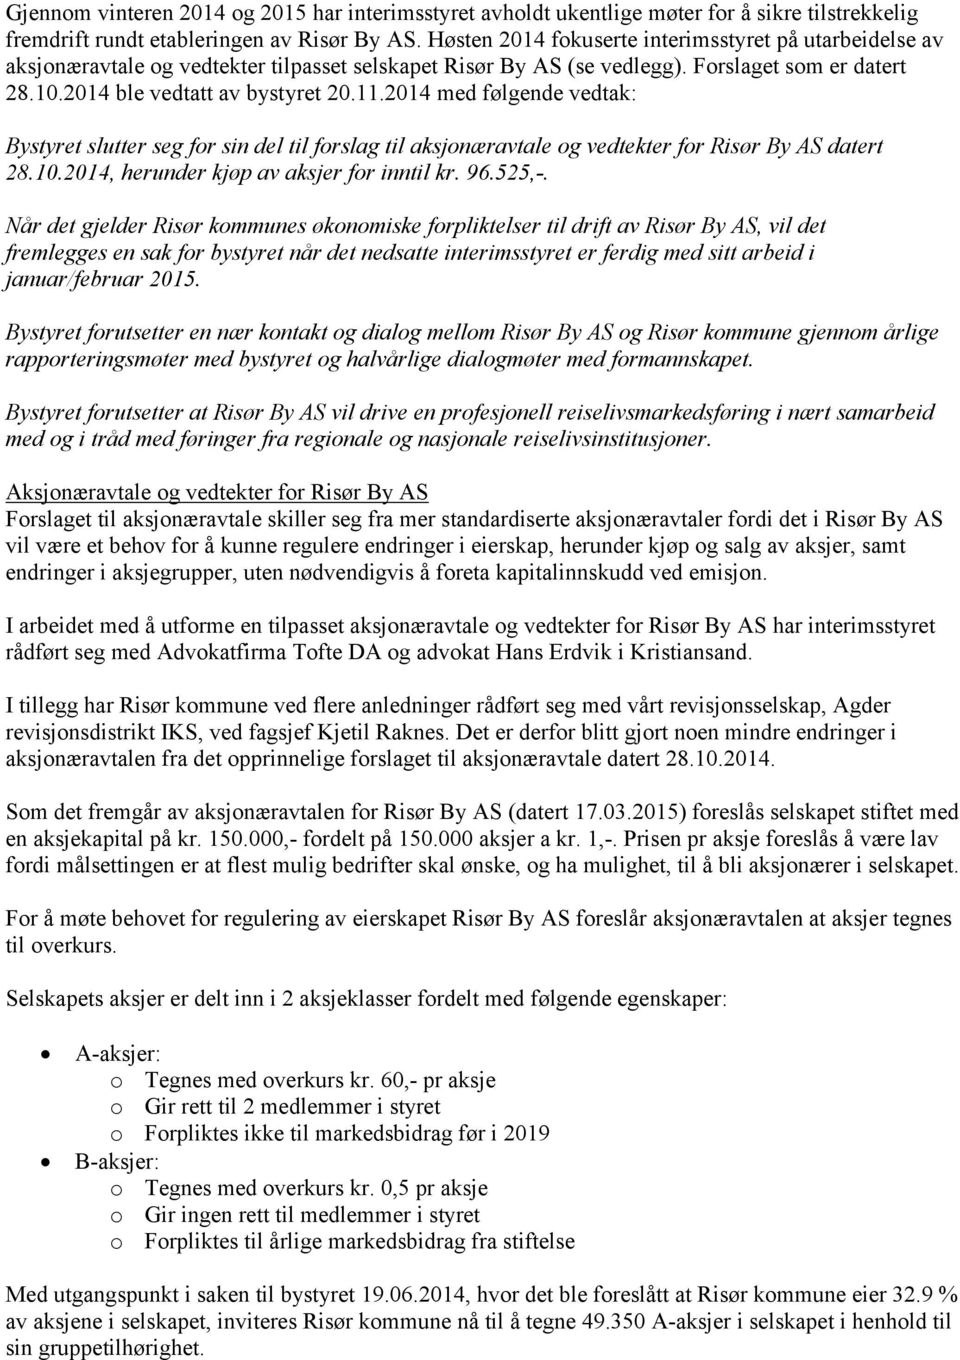 2014 med følgende vedtak: Bystyret slutter seg for sin del til forslag til aksjonæravtale og vedtekter for Risør By AS datert 28.10.2014, herunder kjøp av aksjer for inntil kr. 96.525,-.